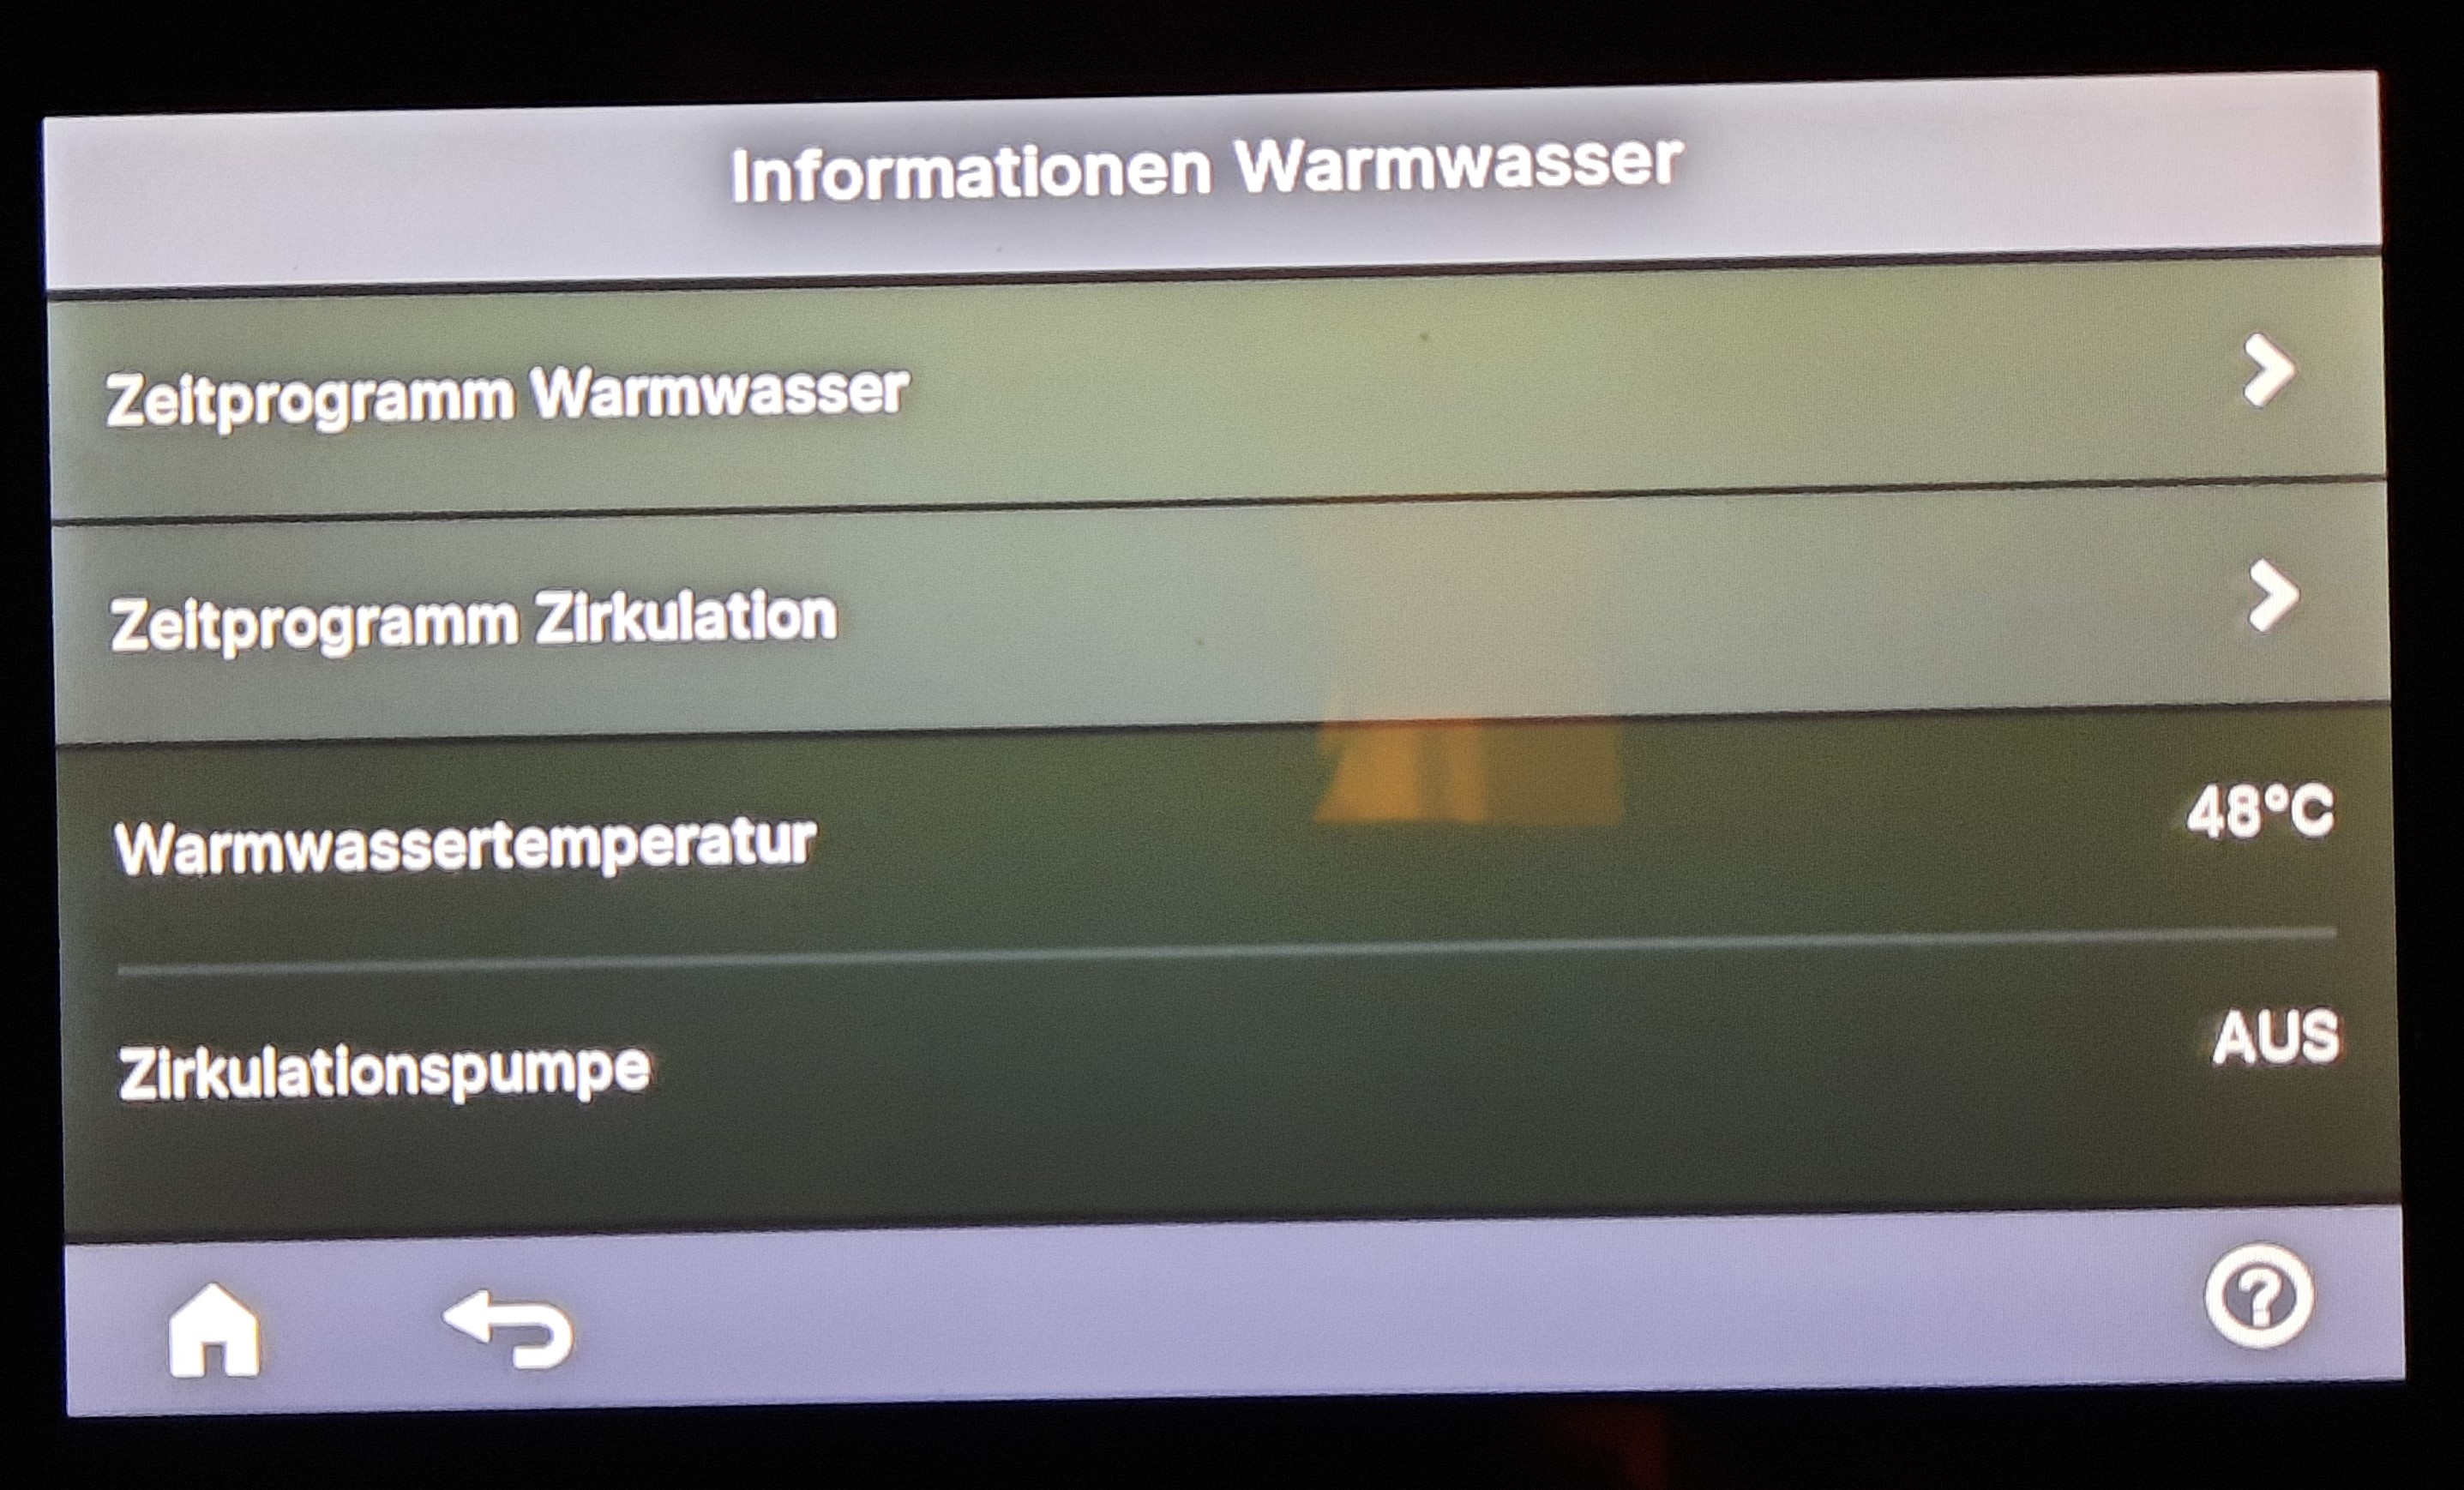 1_Display_Information_Warmwasser.jpg